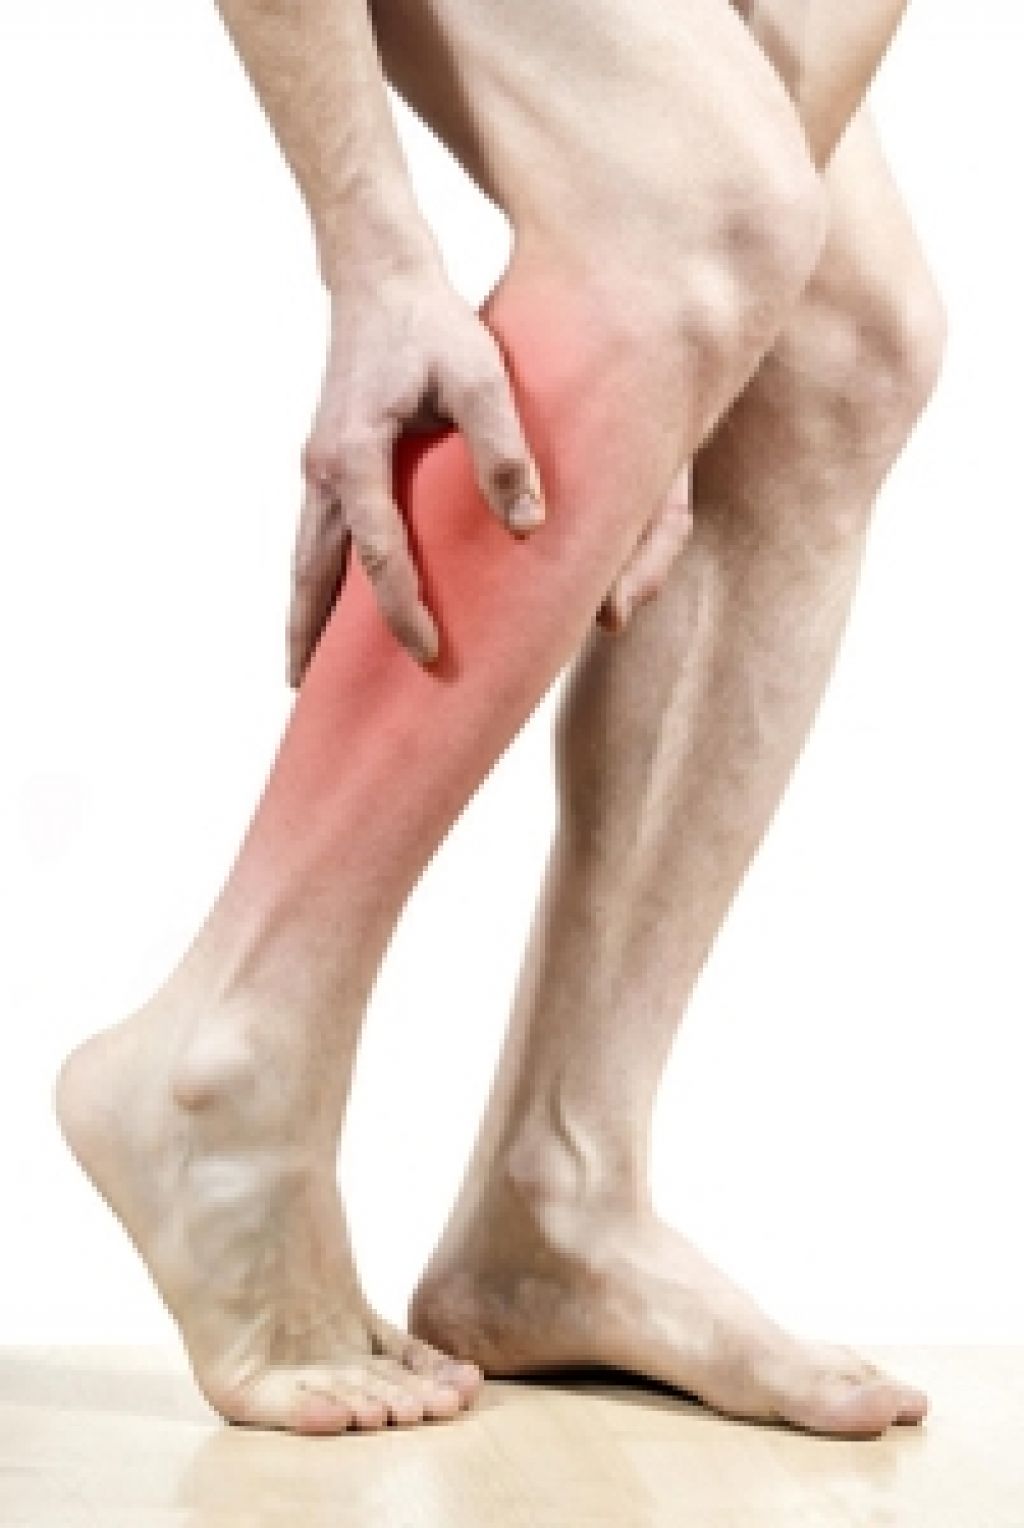 Судорога стоп лечение. Судороги в ногах судороги в ногах. При судорогах в ногах. Судороги в ногах причины.